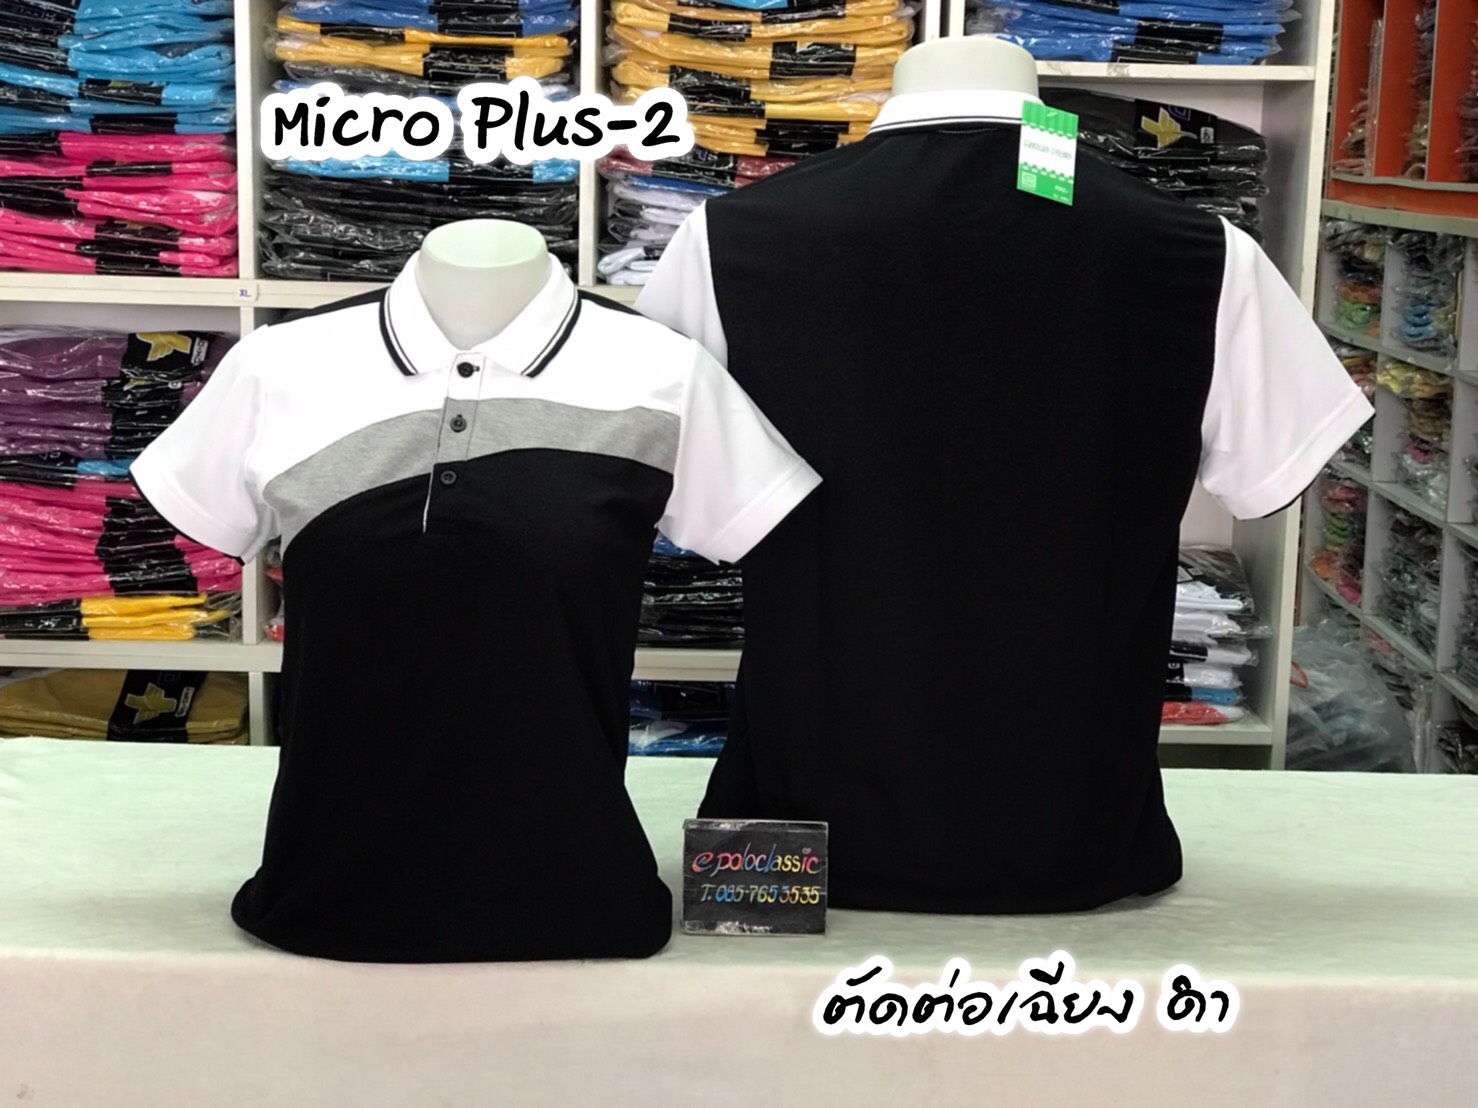 เสื้อโปโลชาย Men Polo Shirt Plain Polo T Shirt Soft Pique Short Sleeve Tops For Men Side Vents สีดำ ตัดต่อเฉียงดำเทาขาว เนื้อผ้านุ่ม สวมใส่สบาย ซึ่งมีทั้งแบบชาย และแบบผู้หญิง